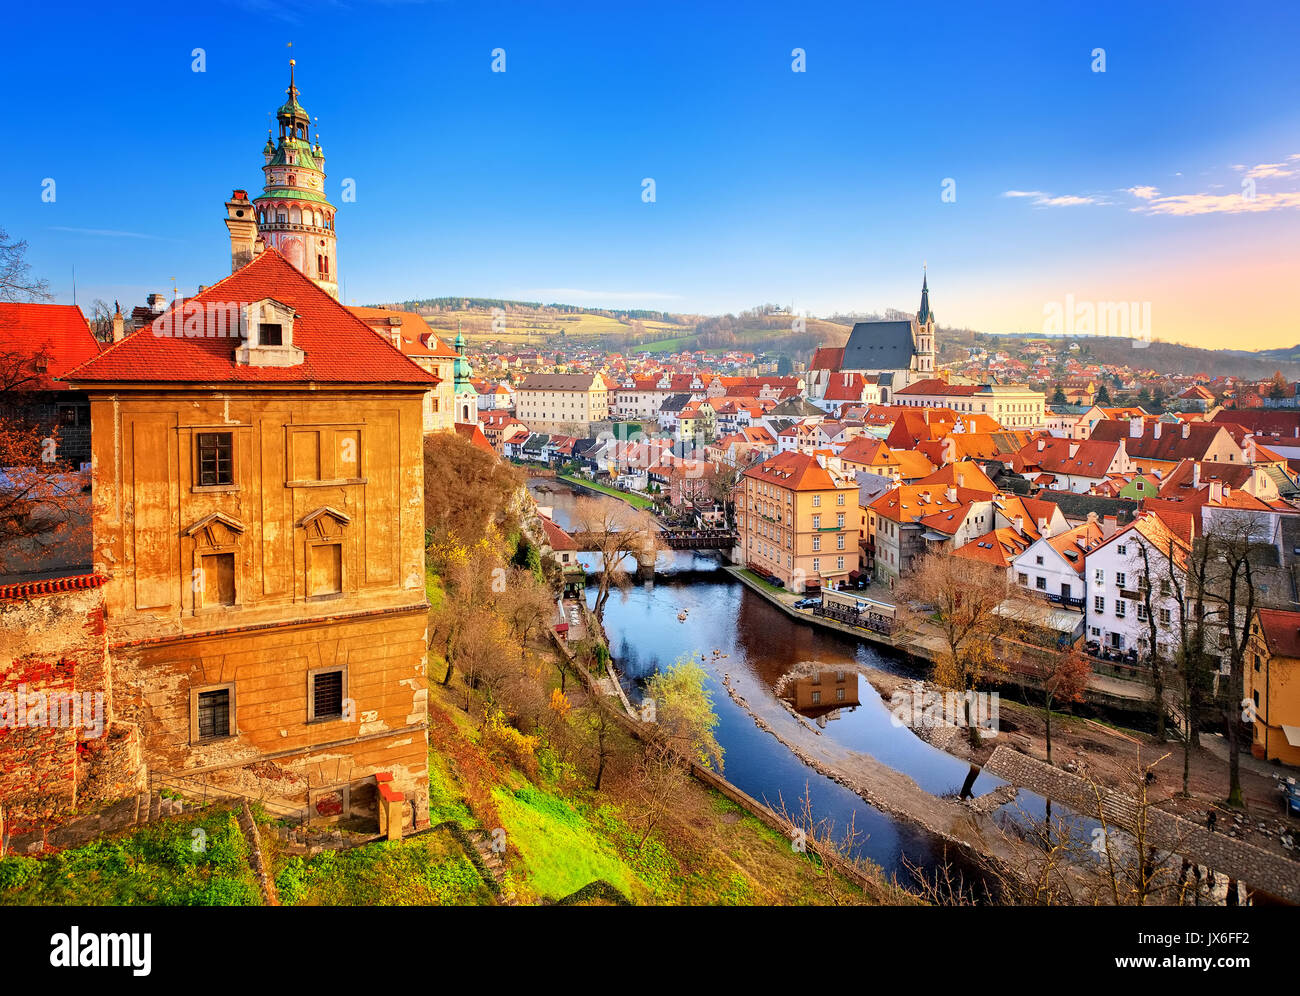 Cesky Krumlov, vue sur les toits de tuiles rouges et les tours de la vieille ville gothique médiévale, République Tchèque Banque D'Images